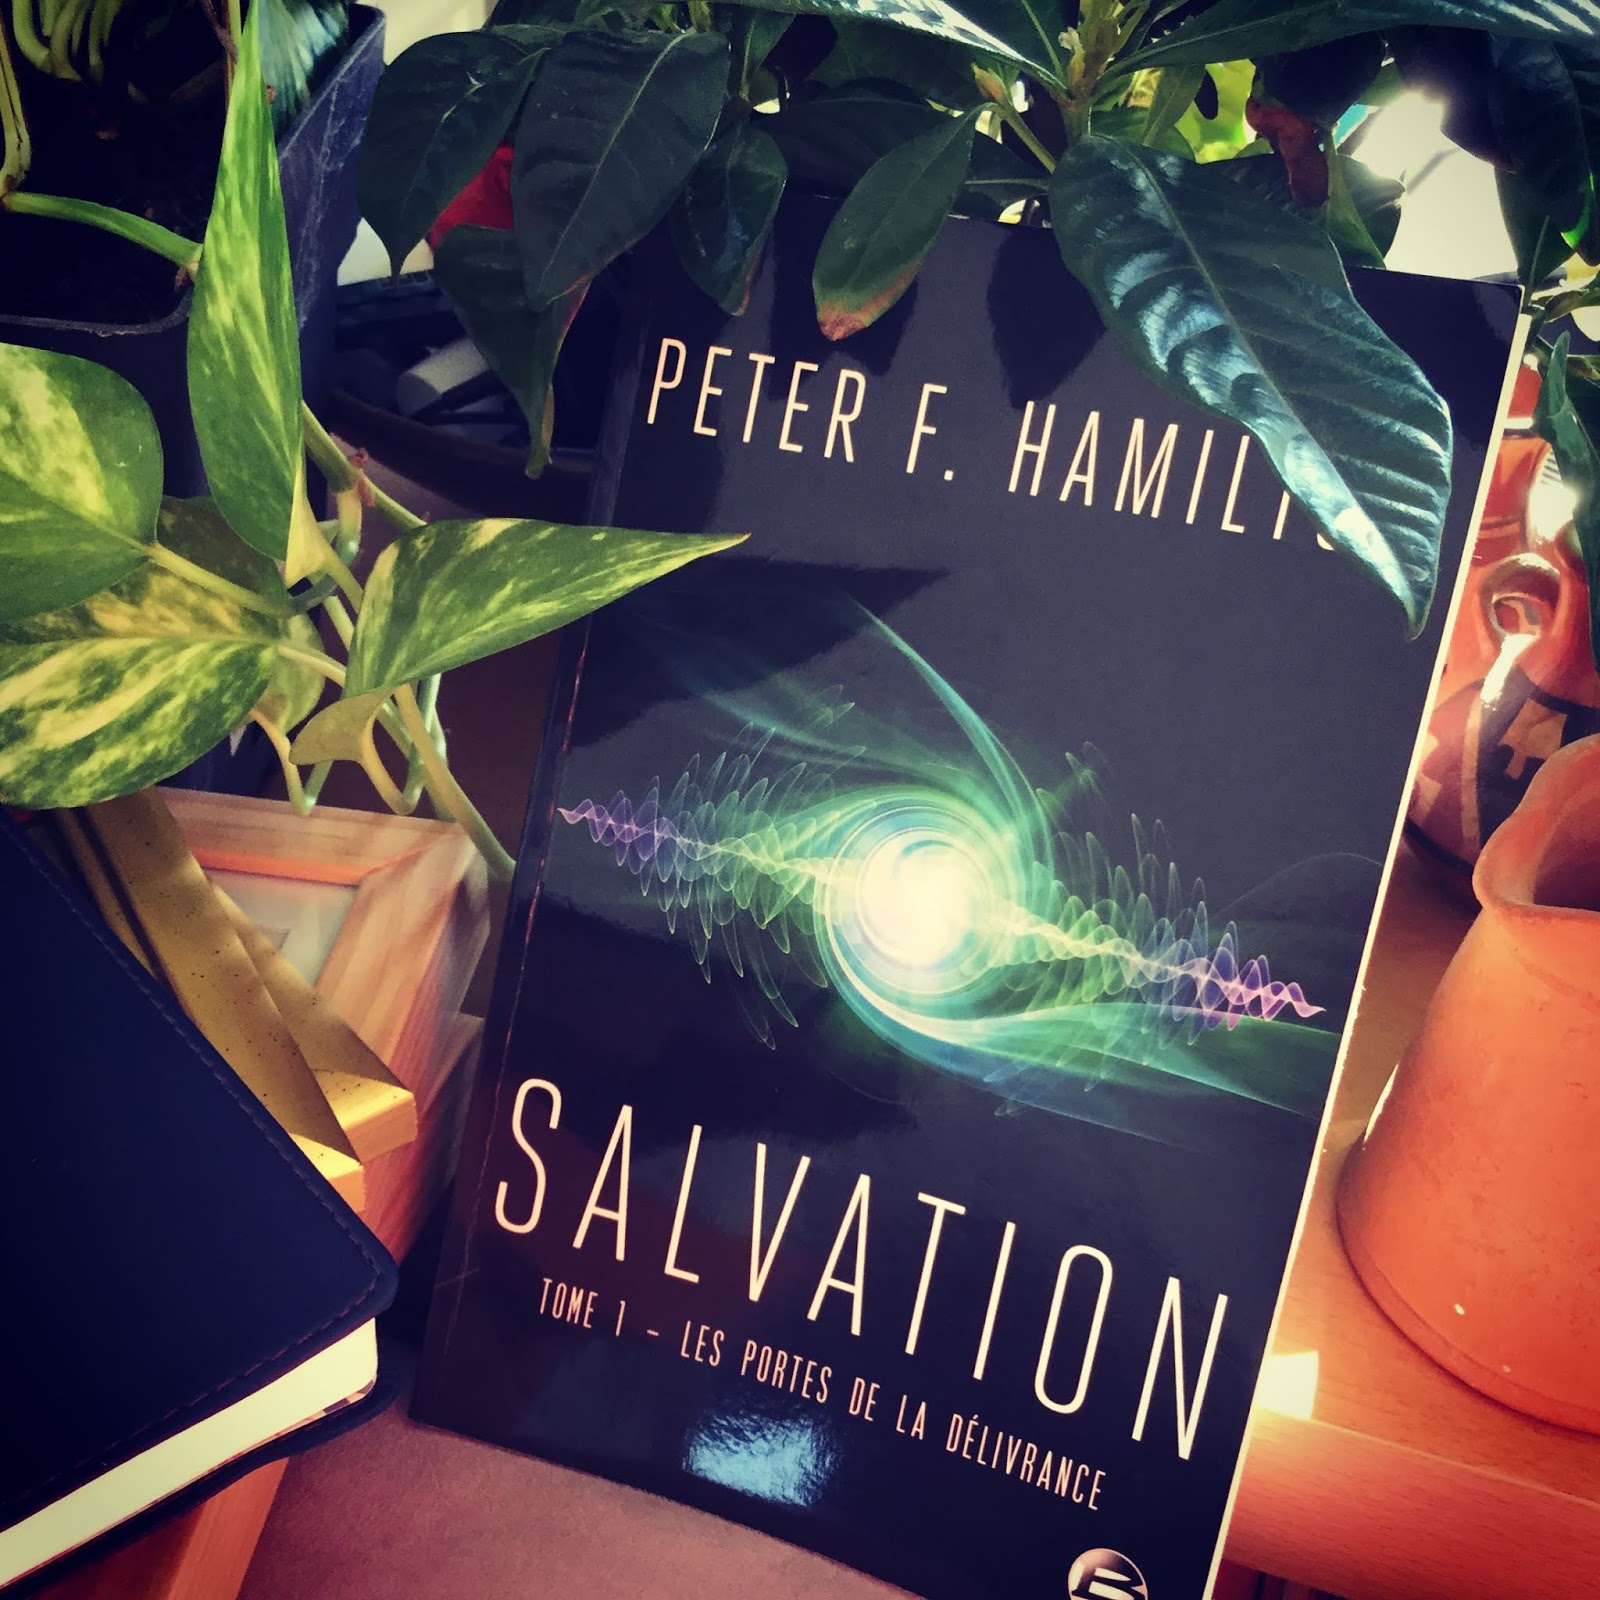 Lire la suite à propos de l’article Salvation tome 1 : Les portes de la délivrance de Peter F. Hamilton